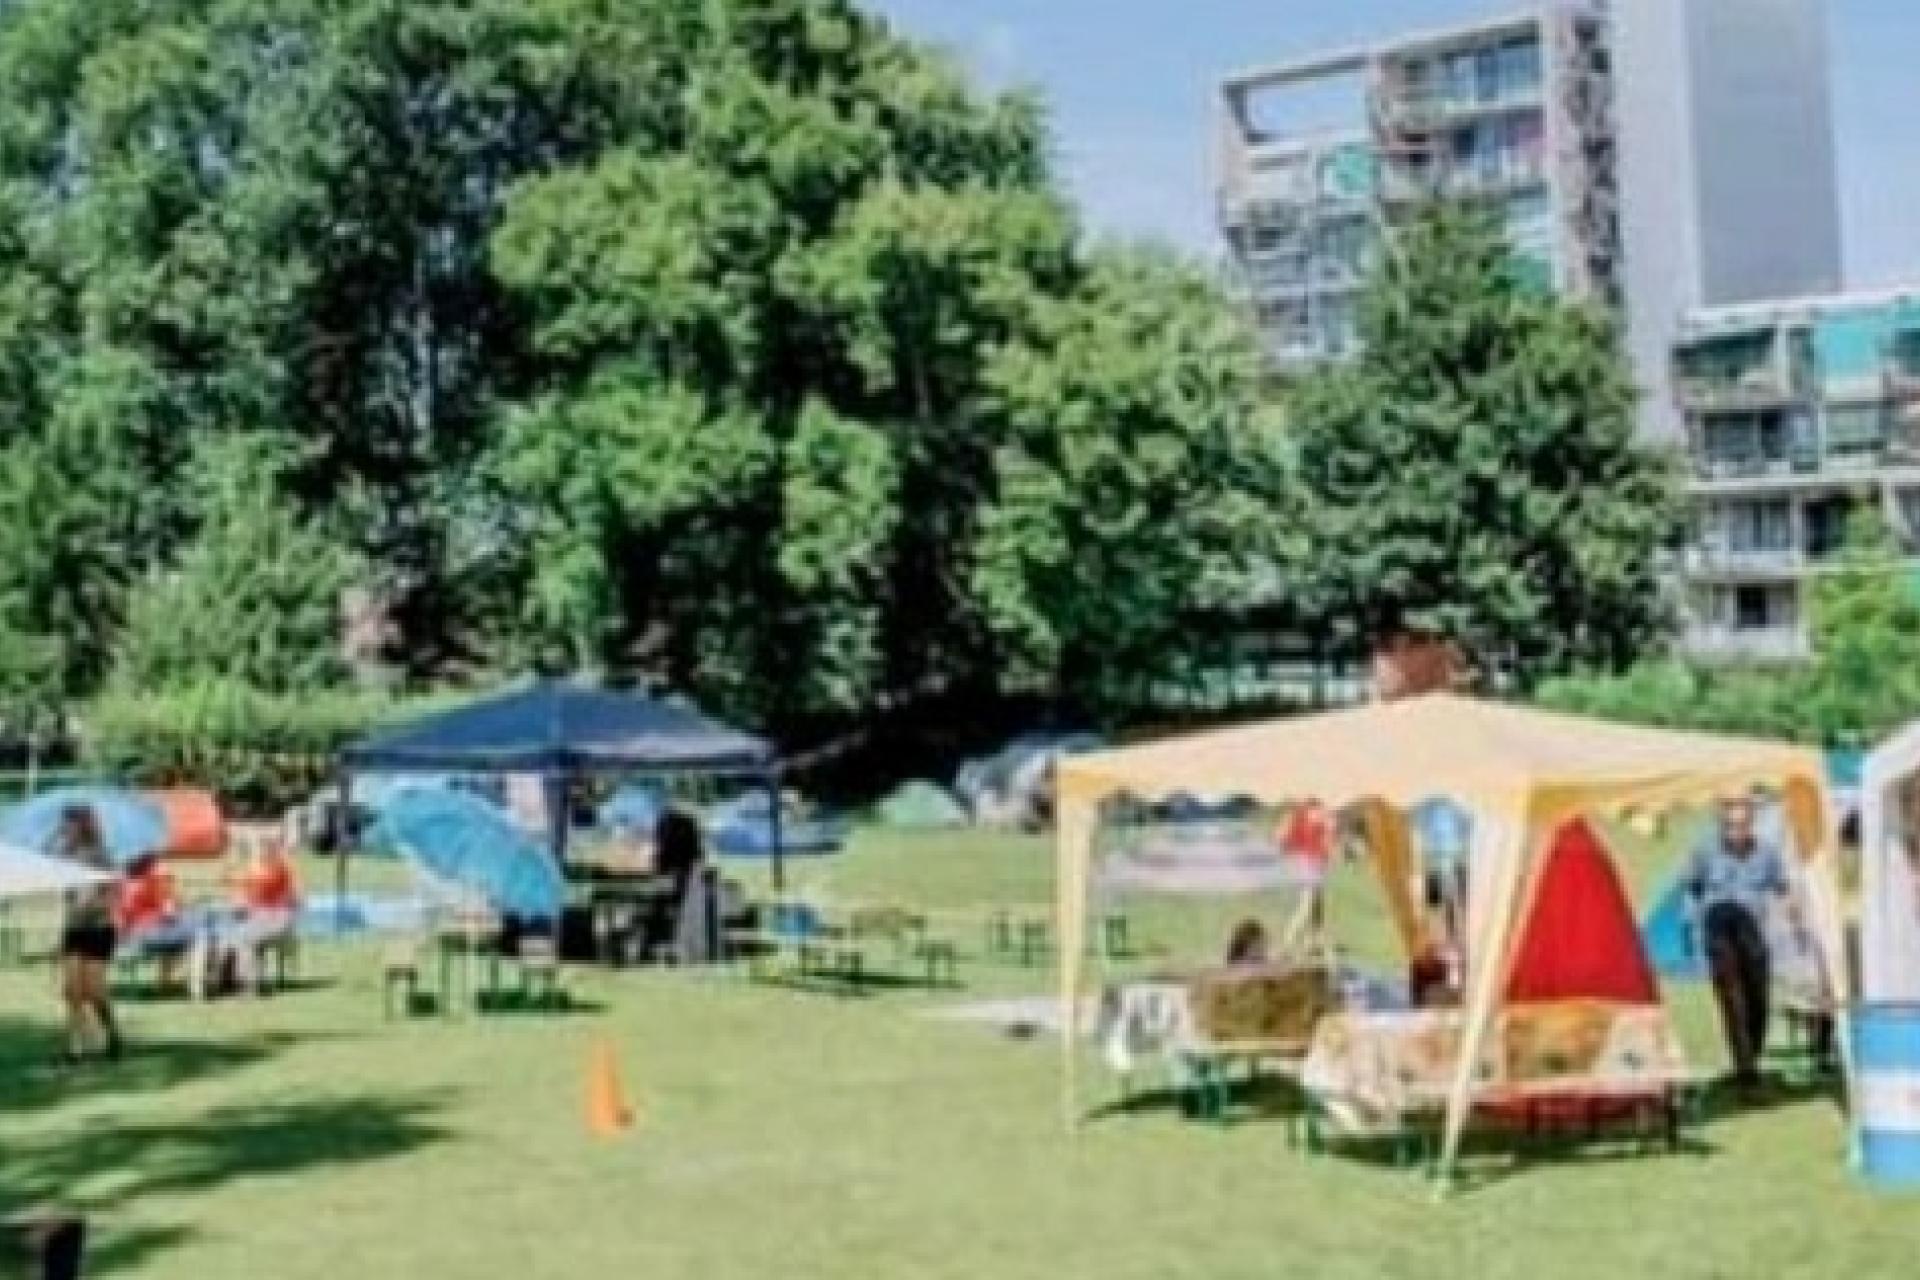 verschillende (party)tenten in een park 